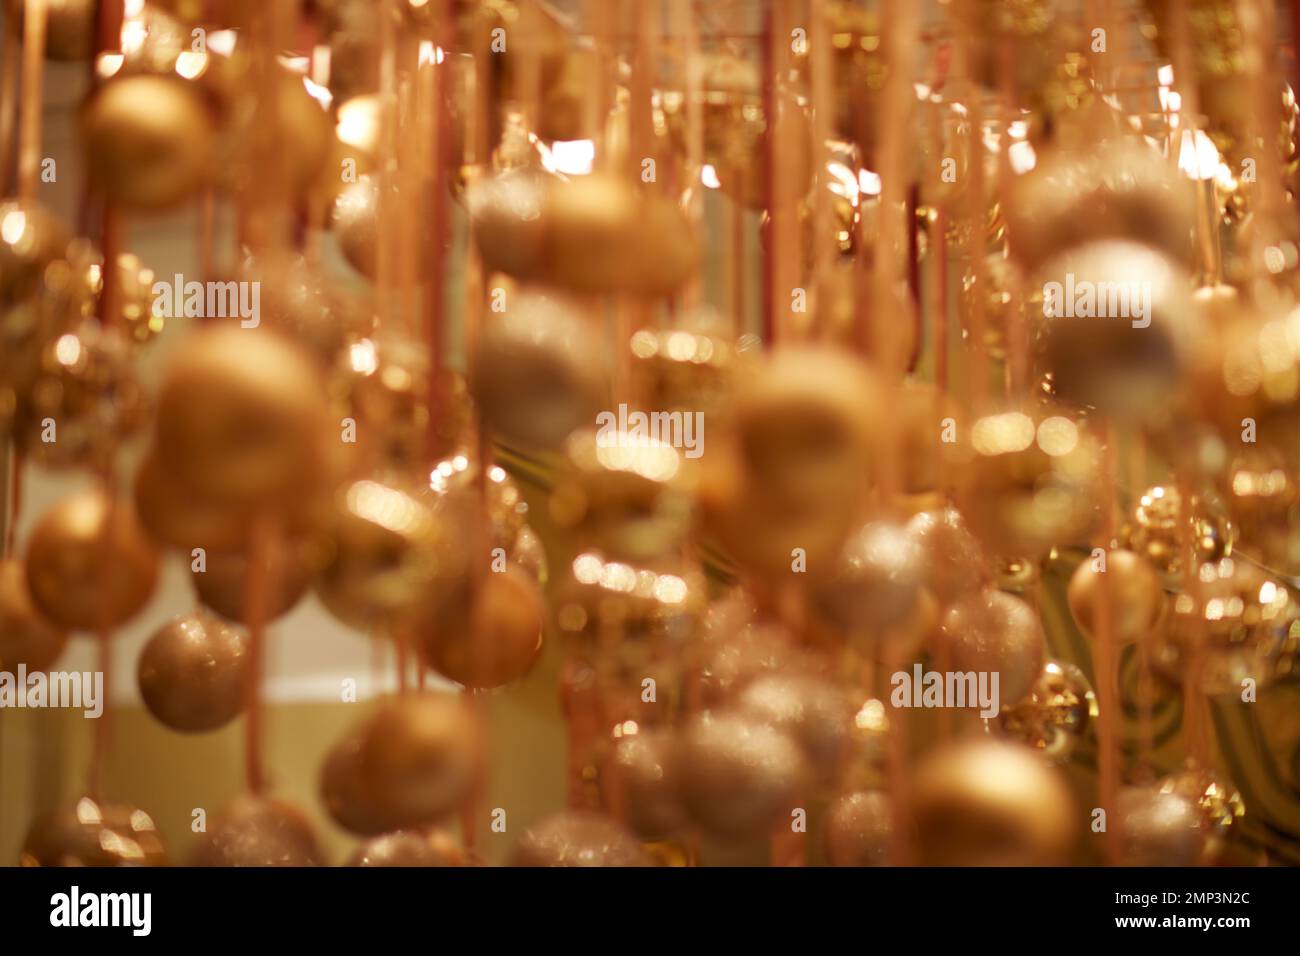 Goldene Weihnachtskugeln hängen über dem Band saisonale Weihnachtsfeier mit weichem Fokus, tropfenförmiger Fokus, ätherische magische Partydekoration Stockfoto